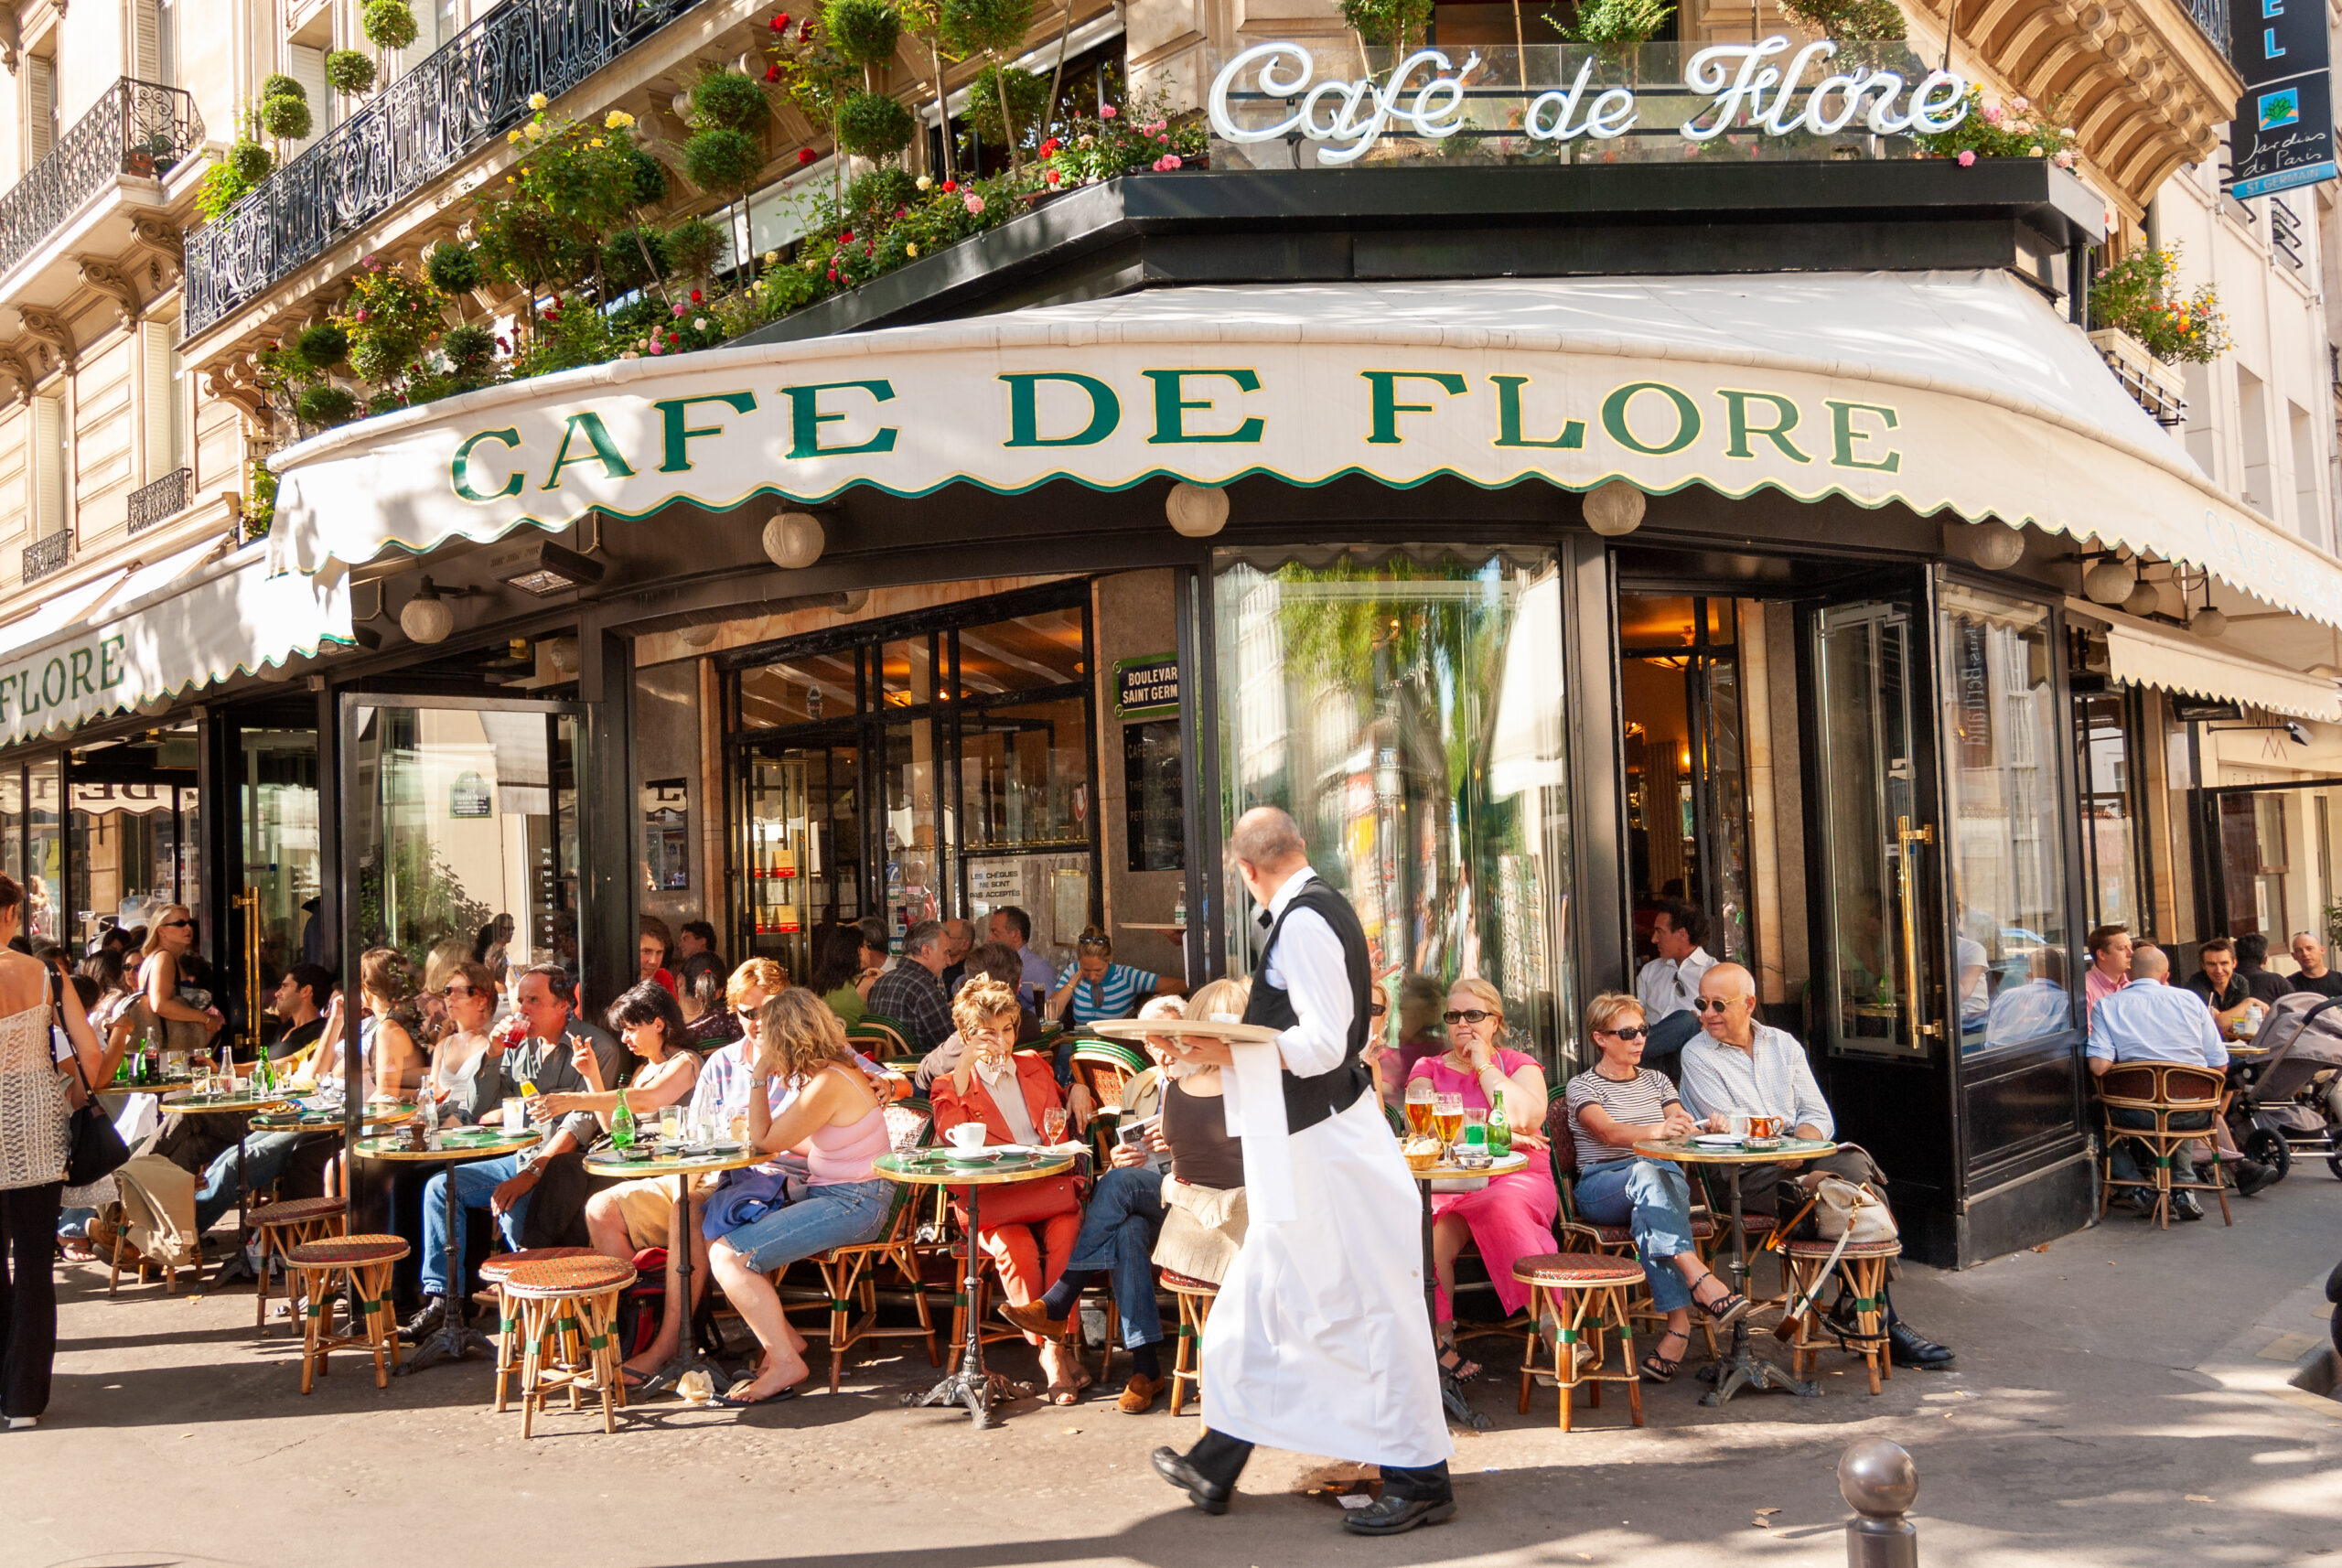 Busy Café Flore in Saint Germain de Prés (Photo Credit: Alex Segre / Shutterstock)